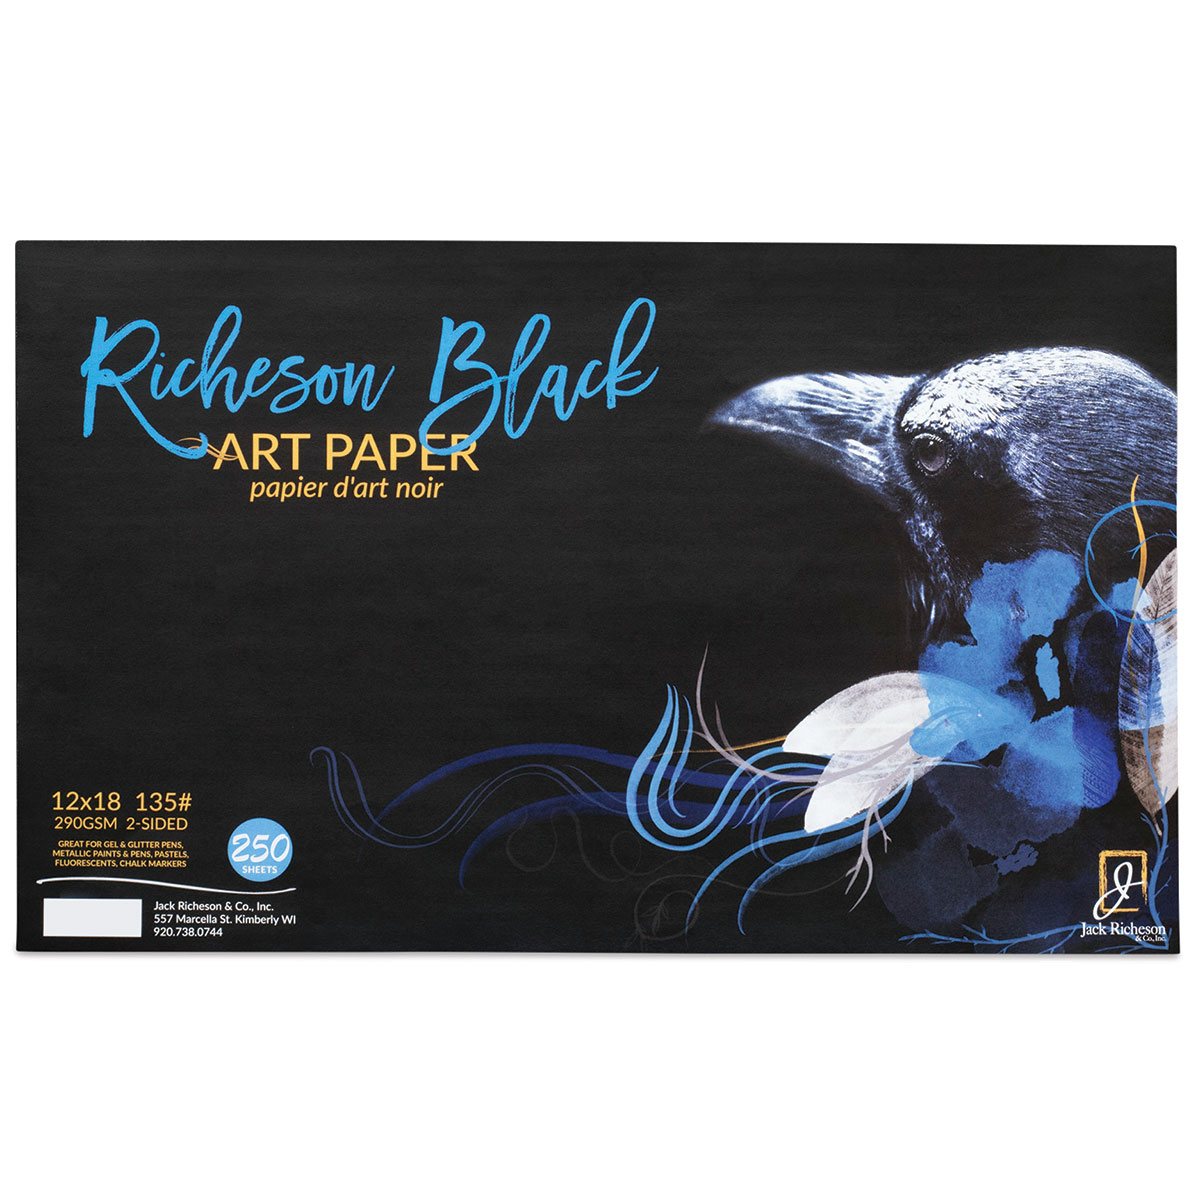 Richeson Black Art Paper Bulk Packs